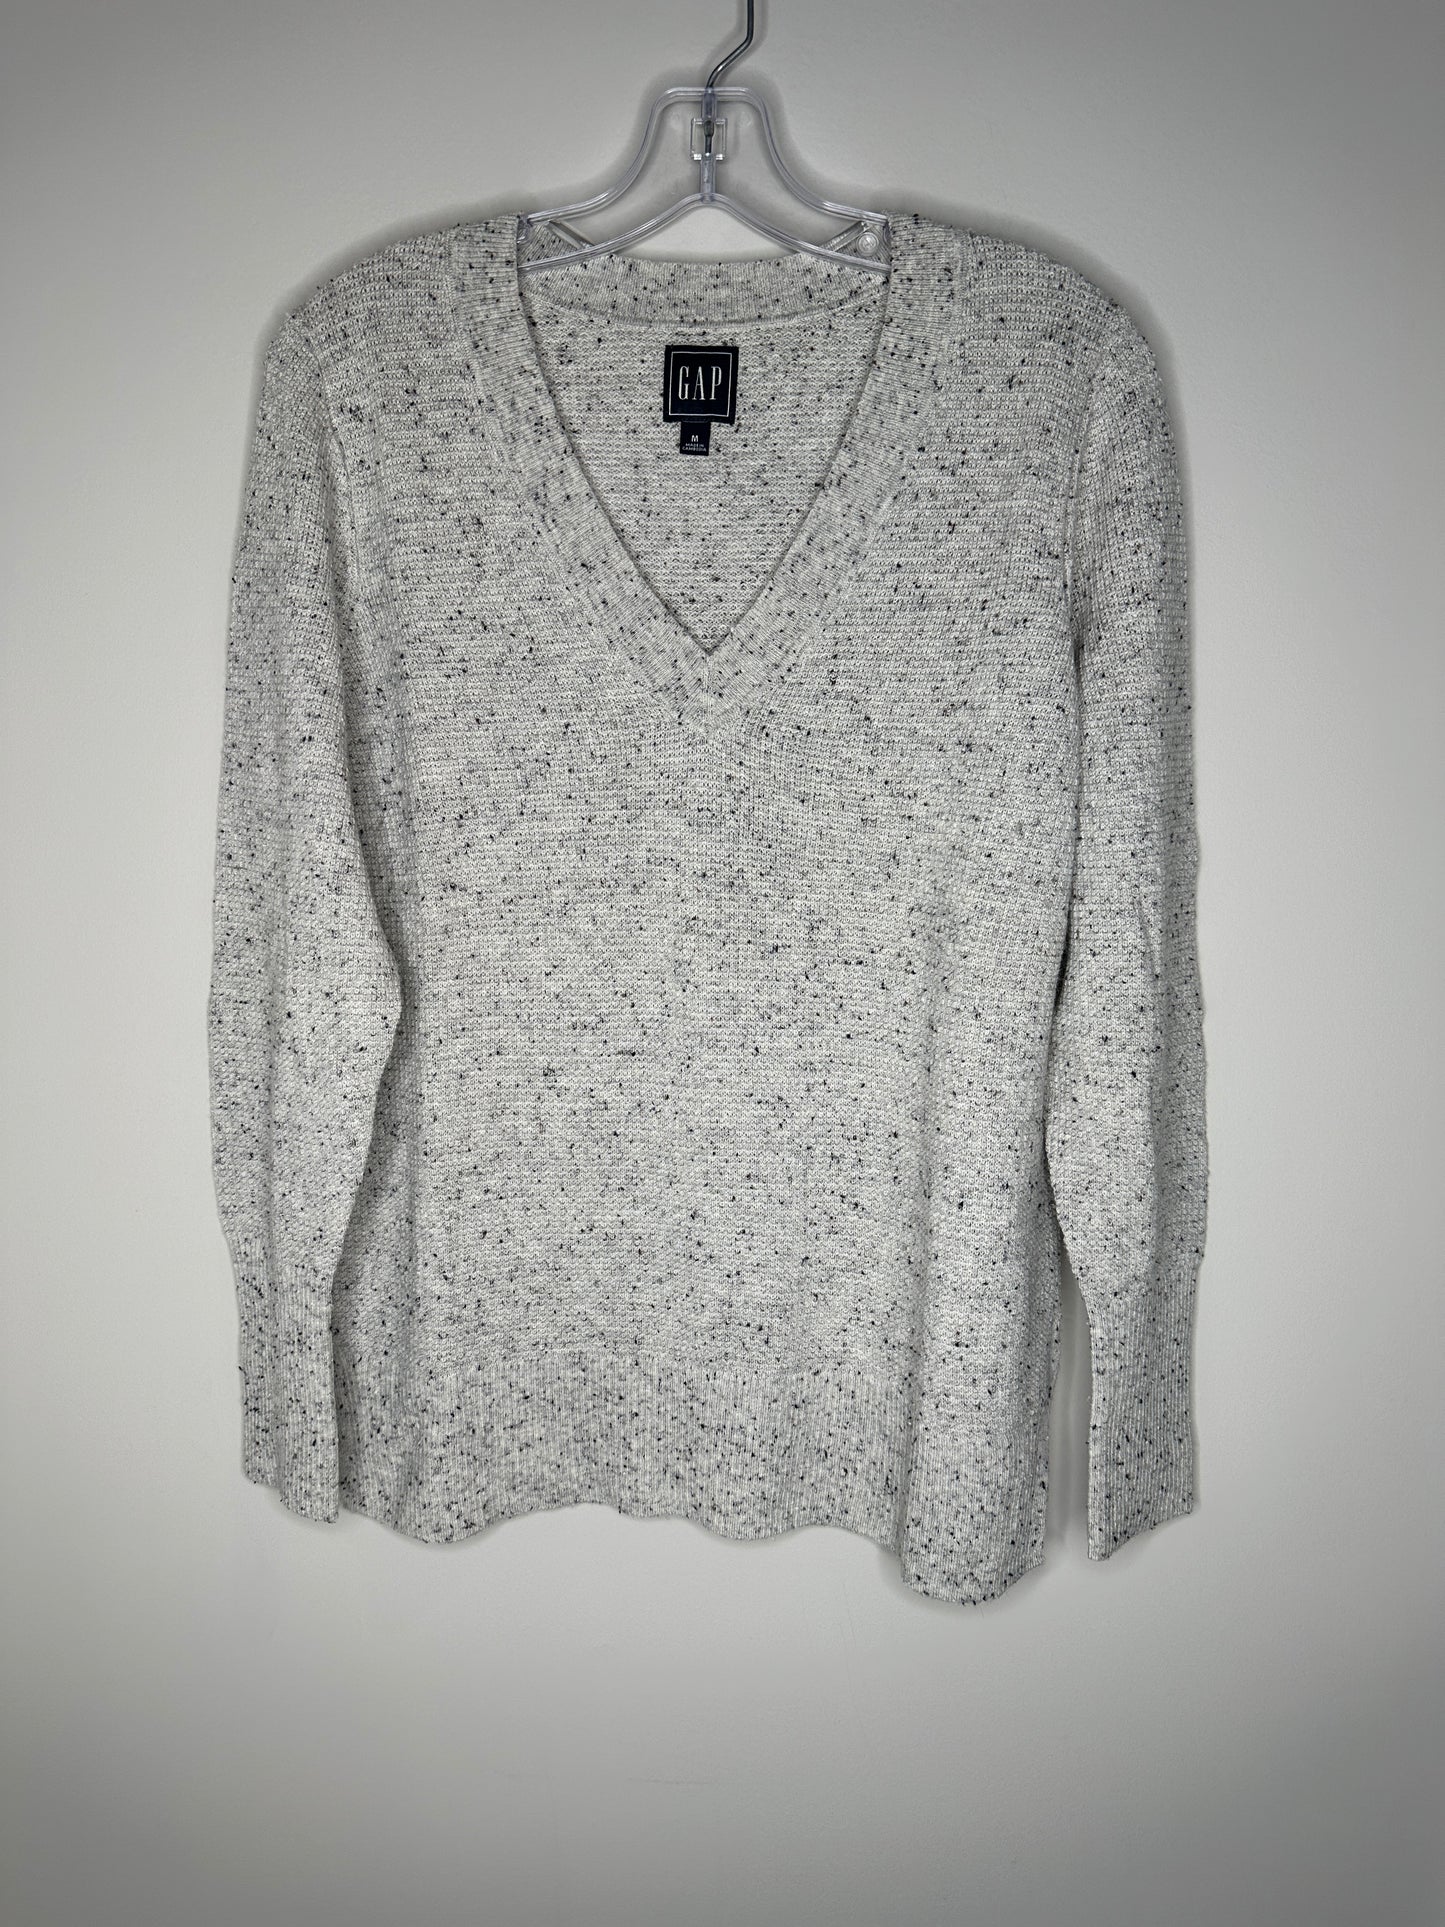 GAP Size M Light Gray w/Black Fleck V-Neck Sweater